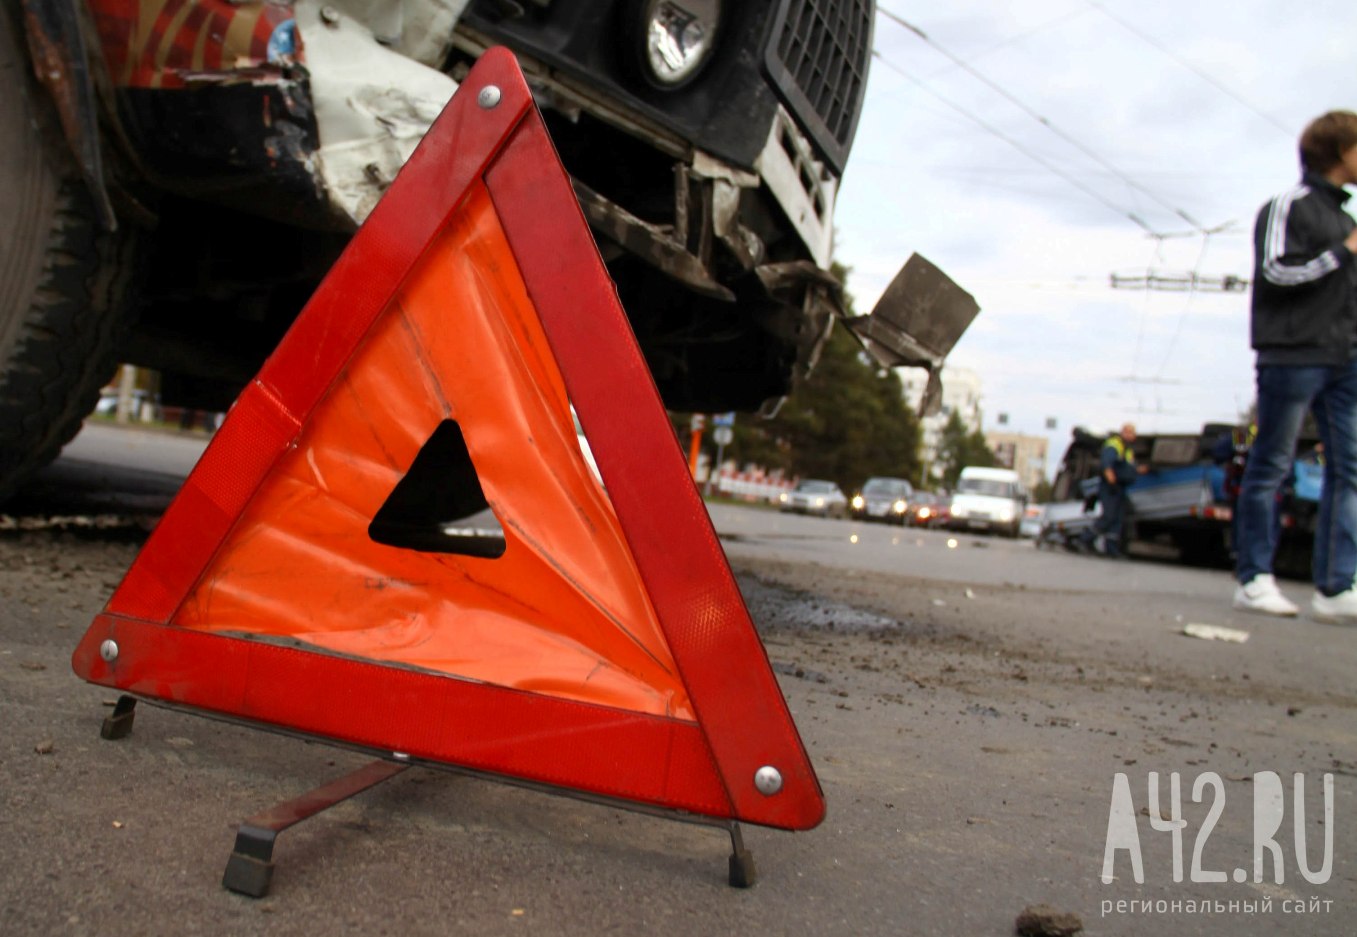 Соцсети: автомобиль с человеком на капоте протаранил машину в Кузбассе 